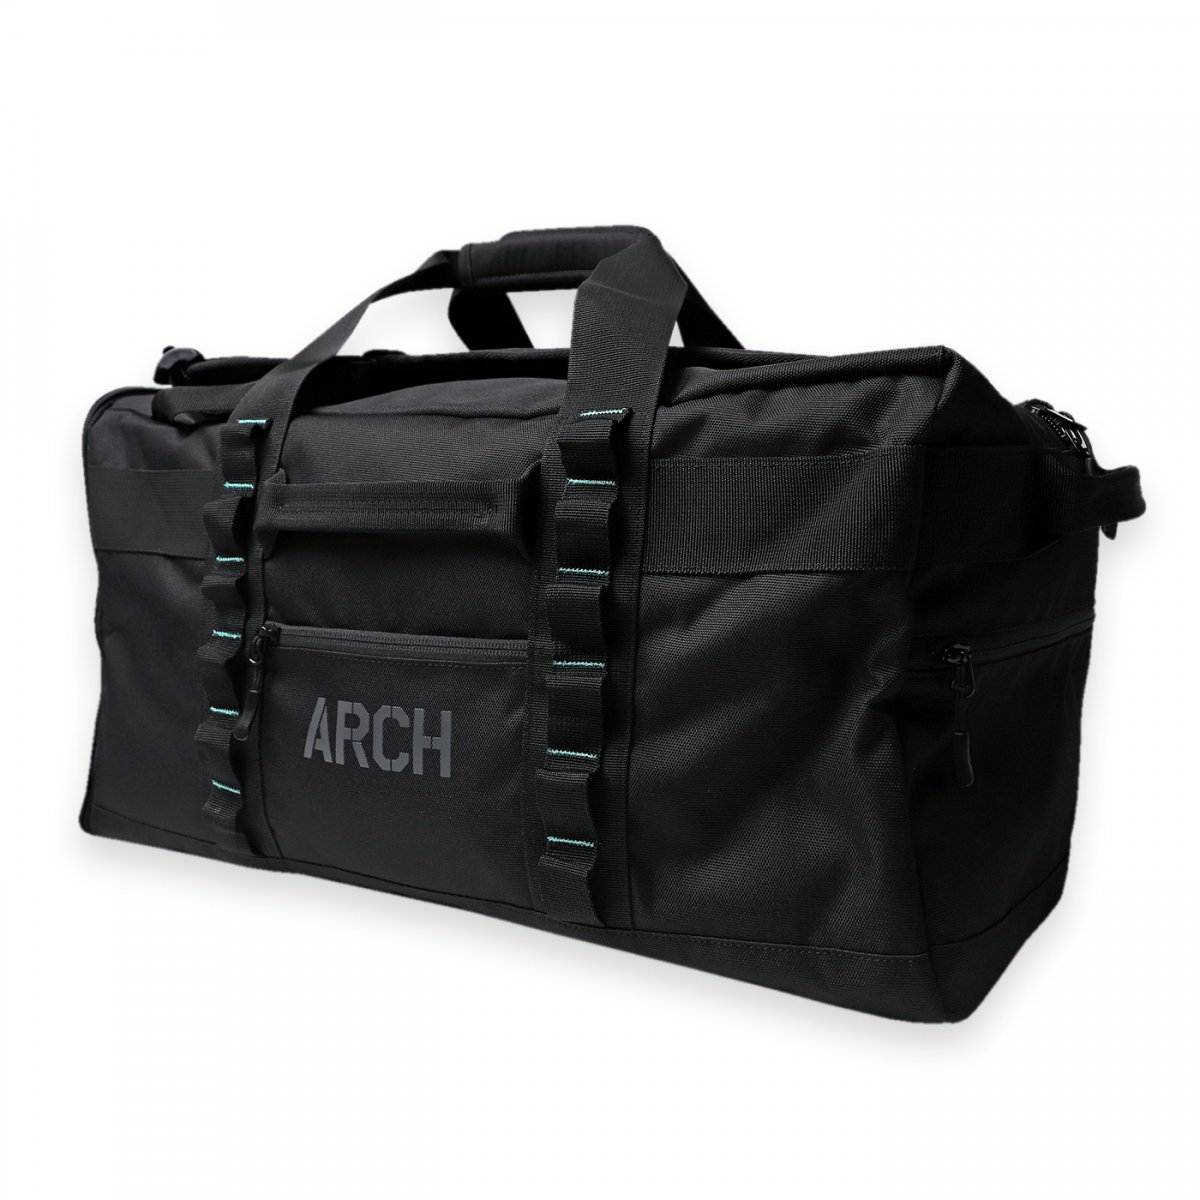 tour duffel bag 2.0【black】 - Arch ☆ アーチ [バスケットボール 